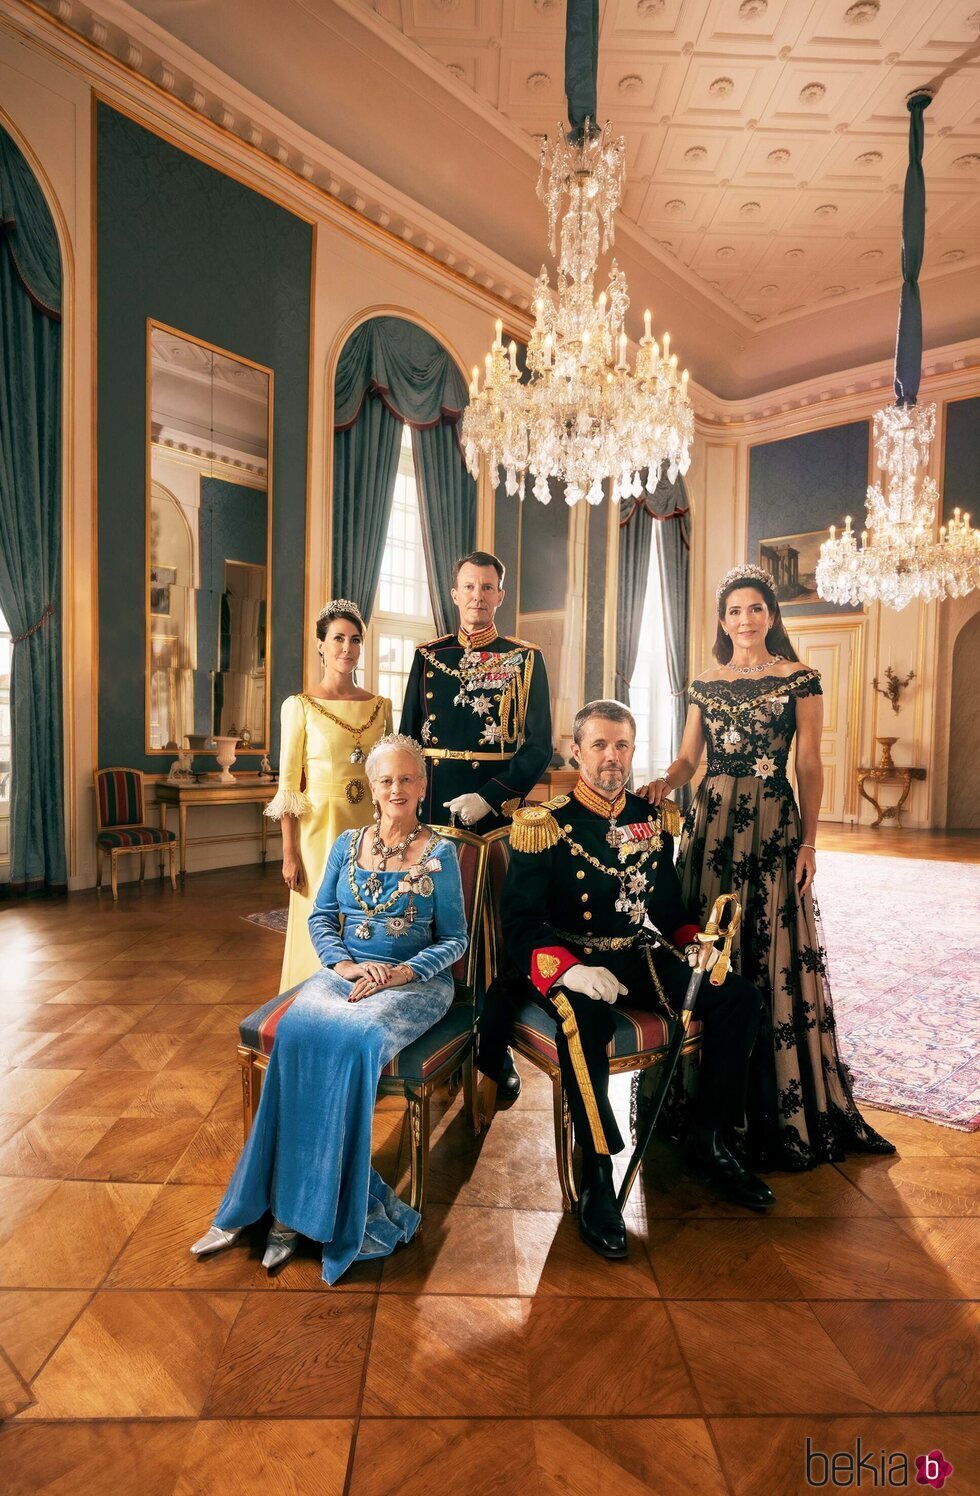 Foto oficial de Margarita de Dinamarca, Federico y Mary de Dinamarca y Joaquín y Marie de Dinamarca por el 50 aniversario de reinado de Margarita de Dinama